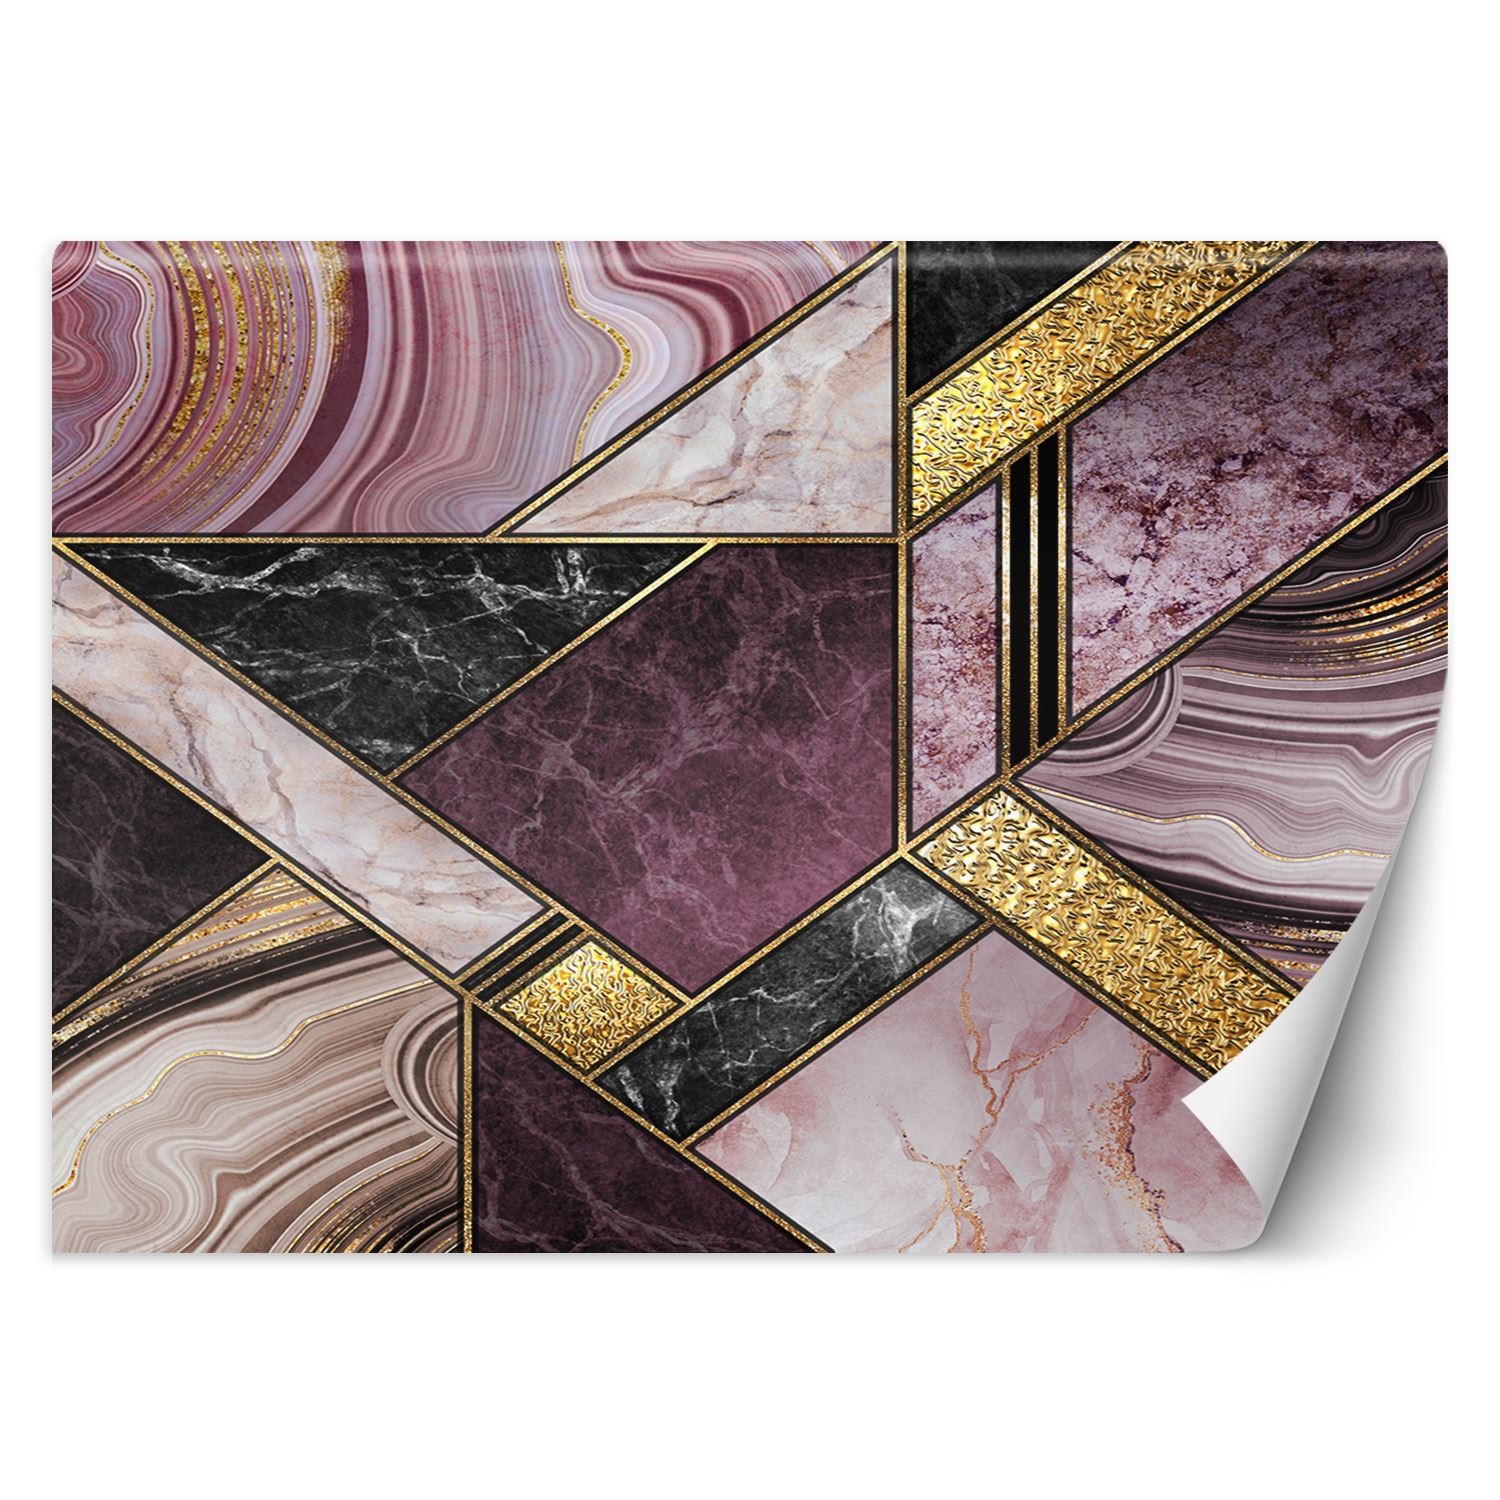 Trend24 – Behang – Marmeren Abstract – Vliesbehang – Fotobehang 3D – Behang Woonkamer – 400x280x2 cm – Incl. behanglijm